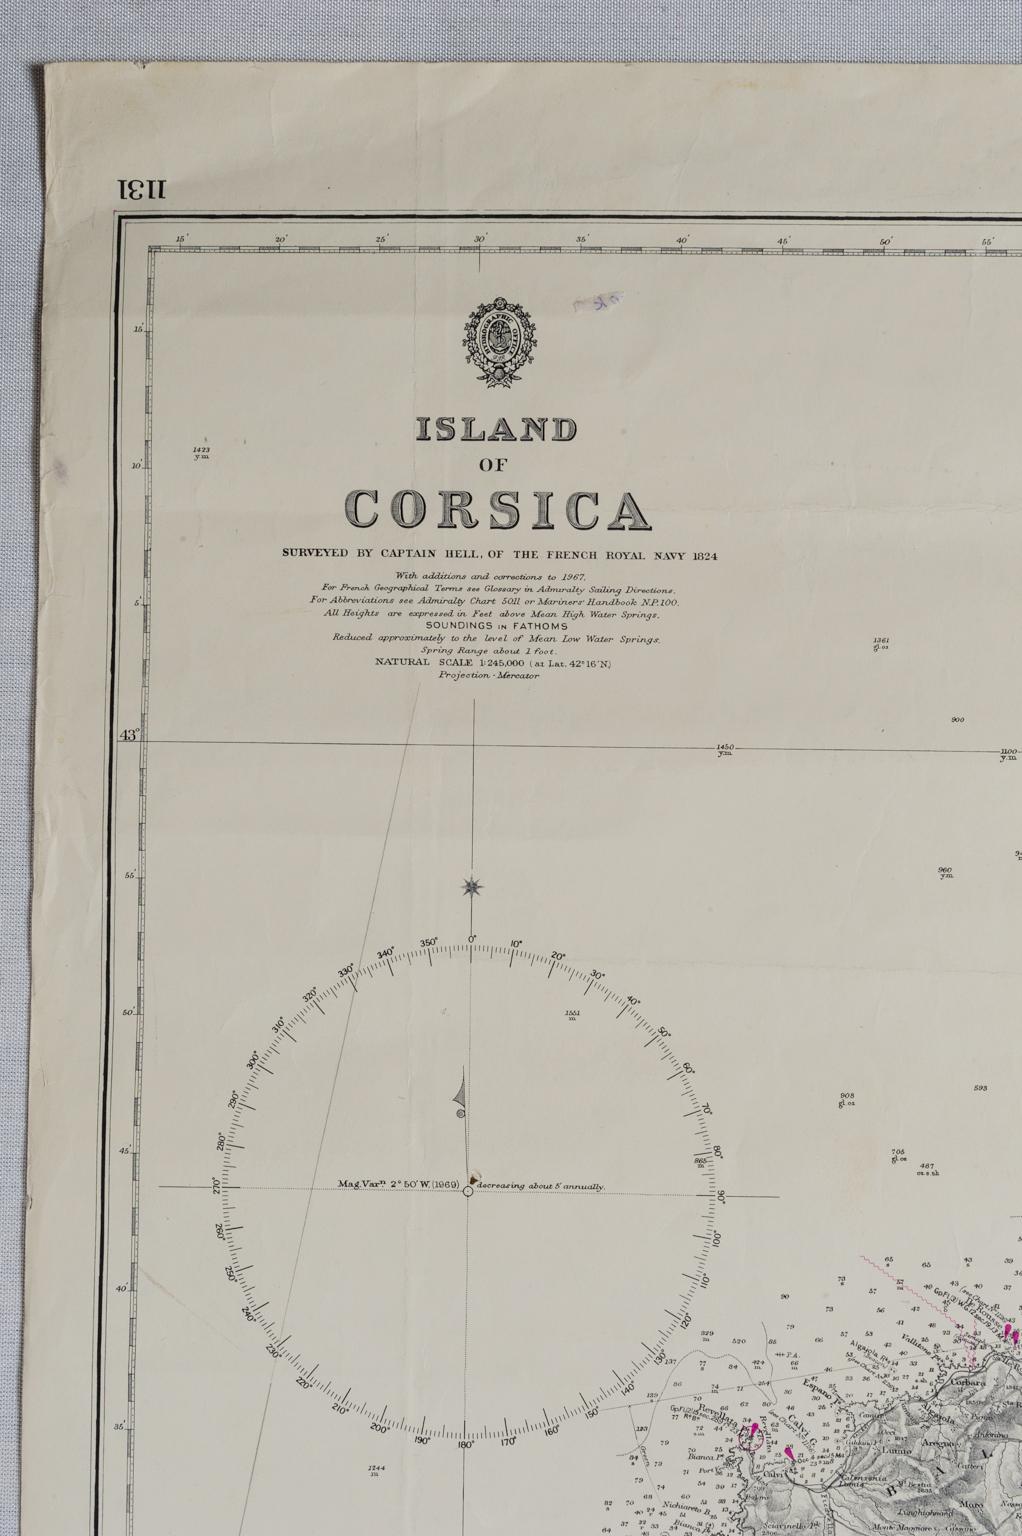 ST/556/1 - Alte Karte der Insel Korsika, vermessen von Kapitän Hell von der königlichen französischen Marine im Jahr 1824, gestochen und veröffentlicht 1874, mit Ergänzungen und Korrekturen in der Projektion 1967-68-69 - Mercator - Gedruckt im